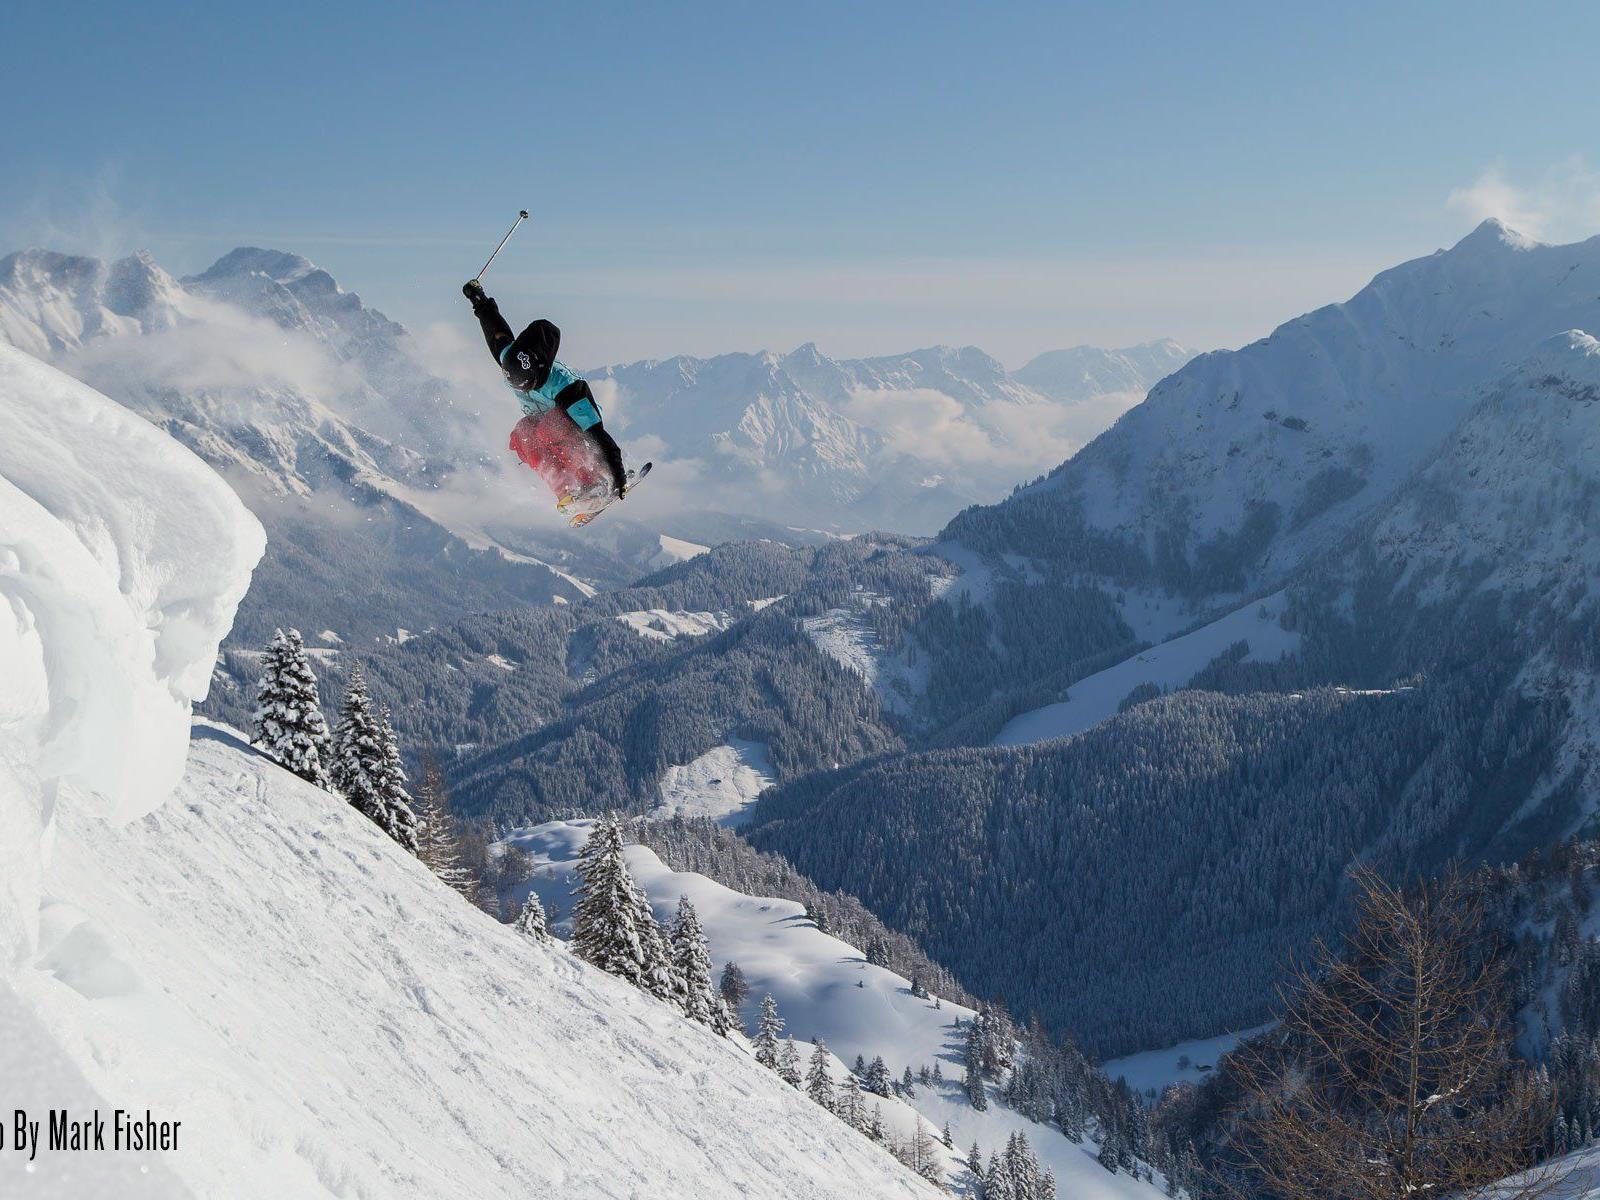 Alle Ski- und Snowboard Fans erwarten vier tolle Kino-Abende voller Action und mit atemberaubenden Landschaftsaufnahmen.